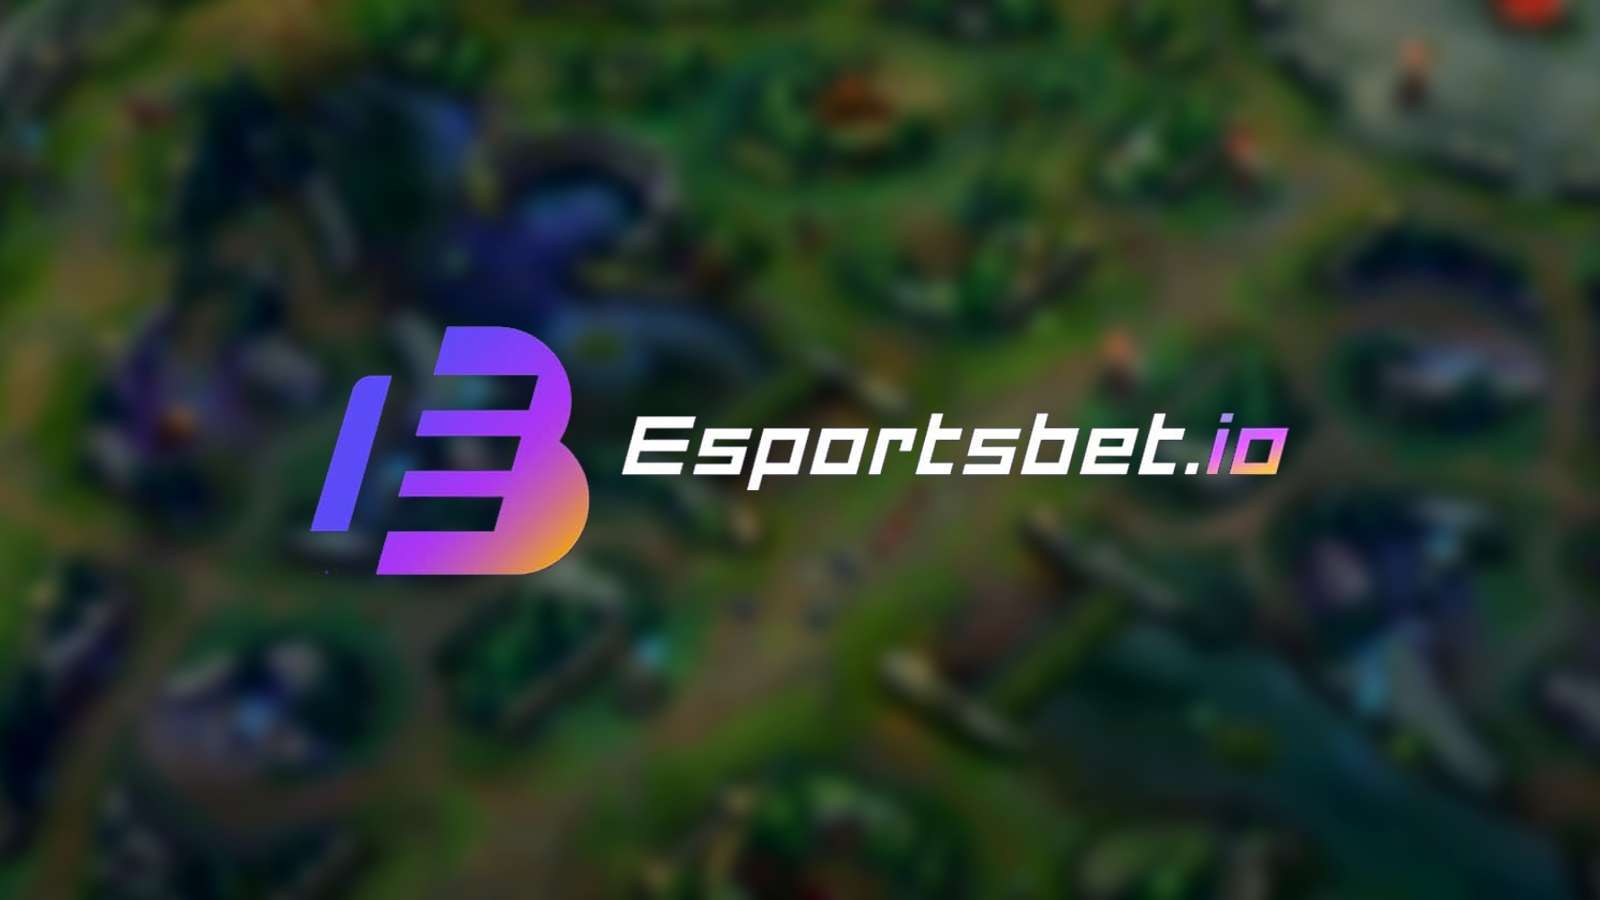 Esports bet logo over league of legends summoners rift